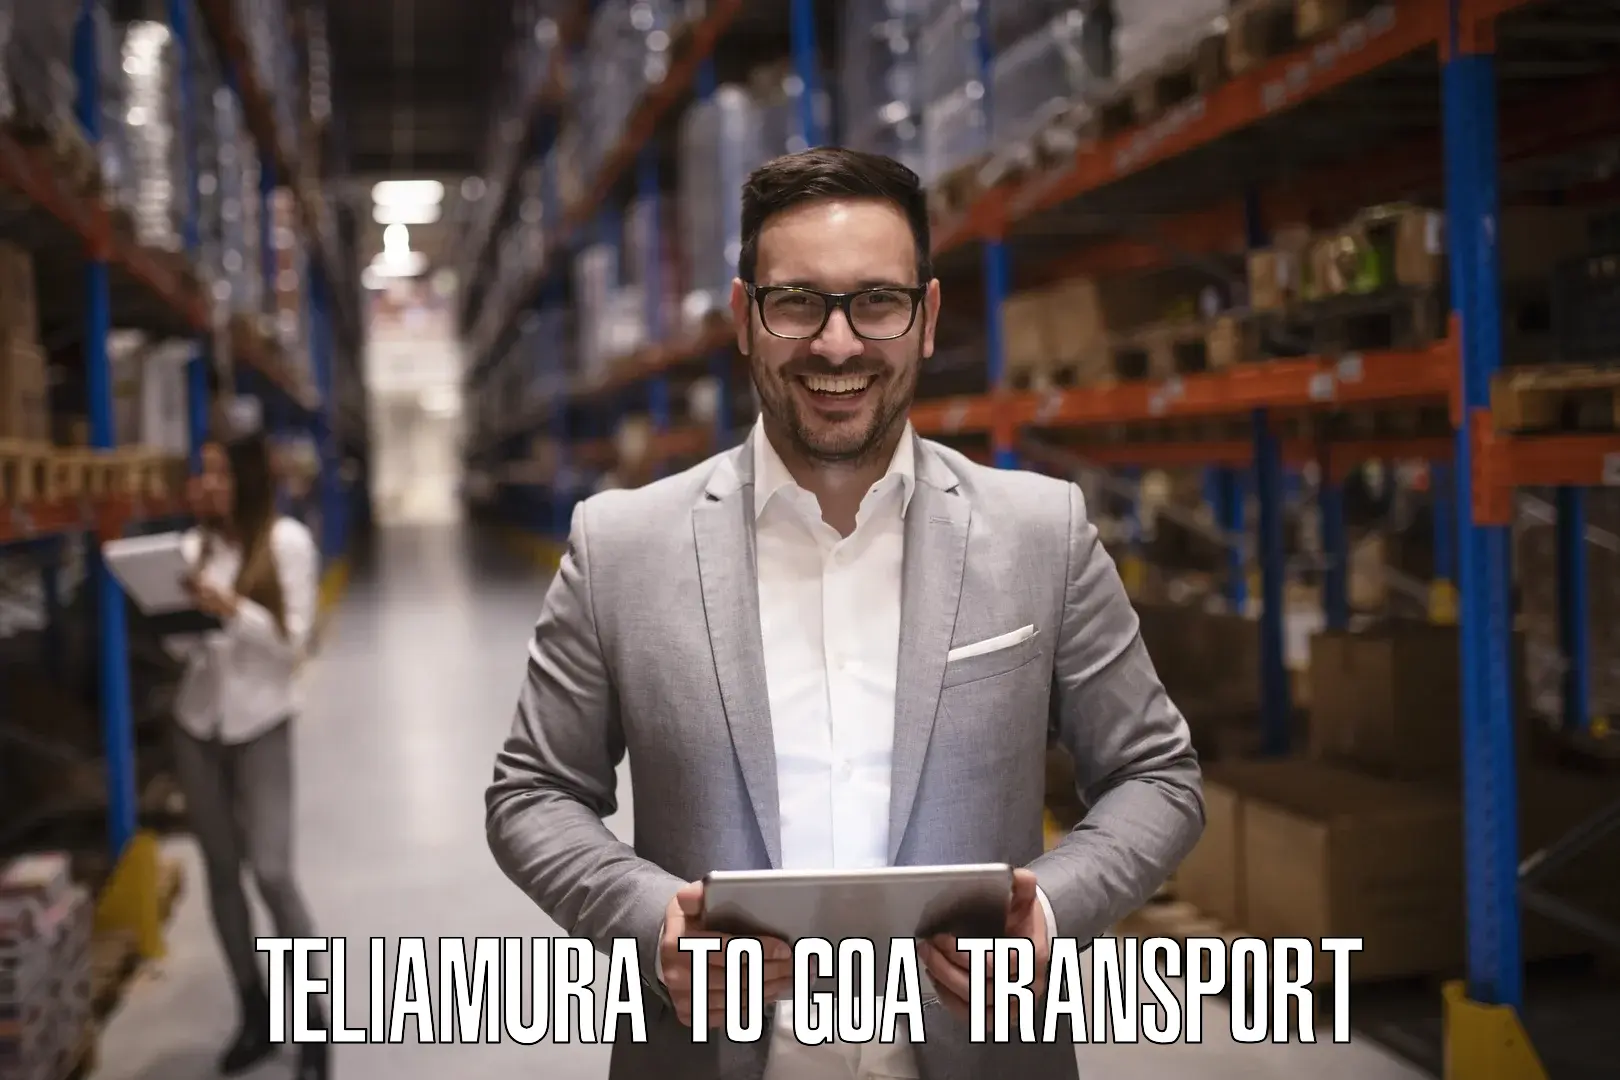 Luggage transport services Teliamura to Goa